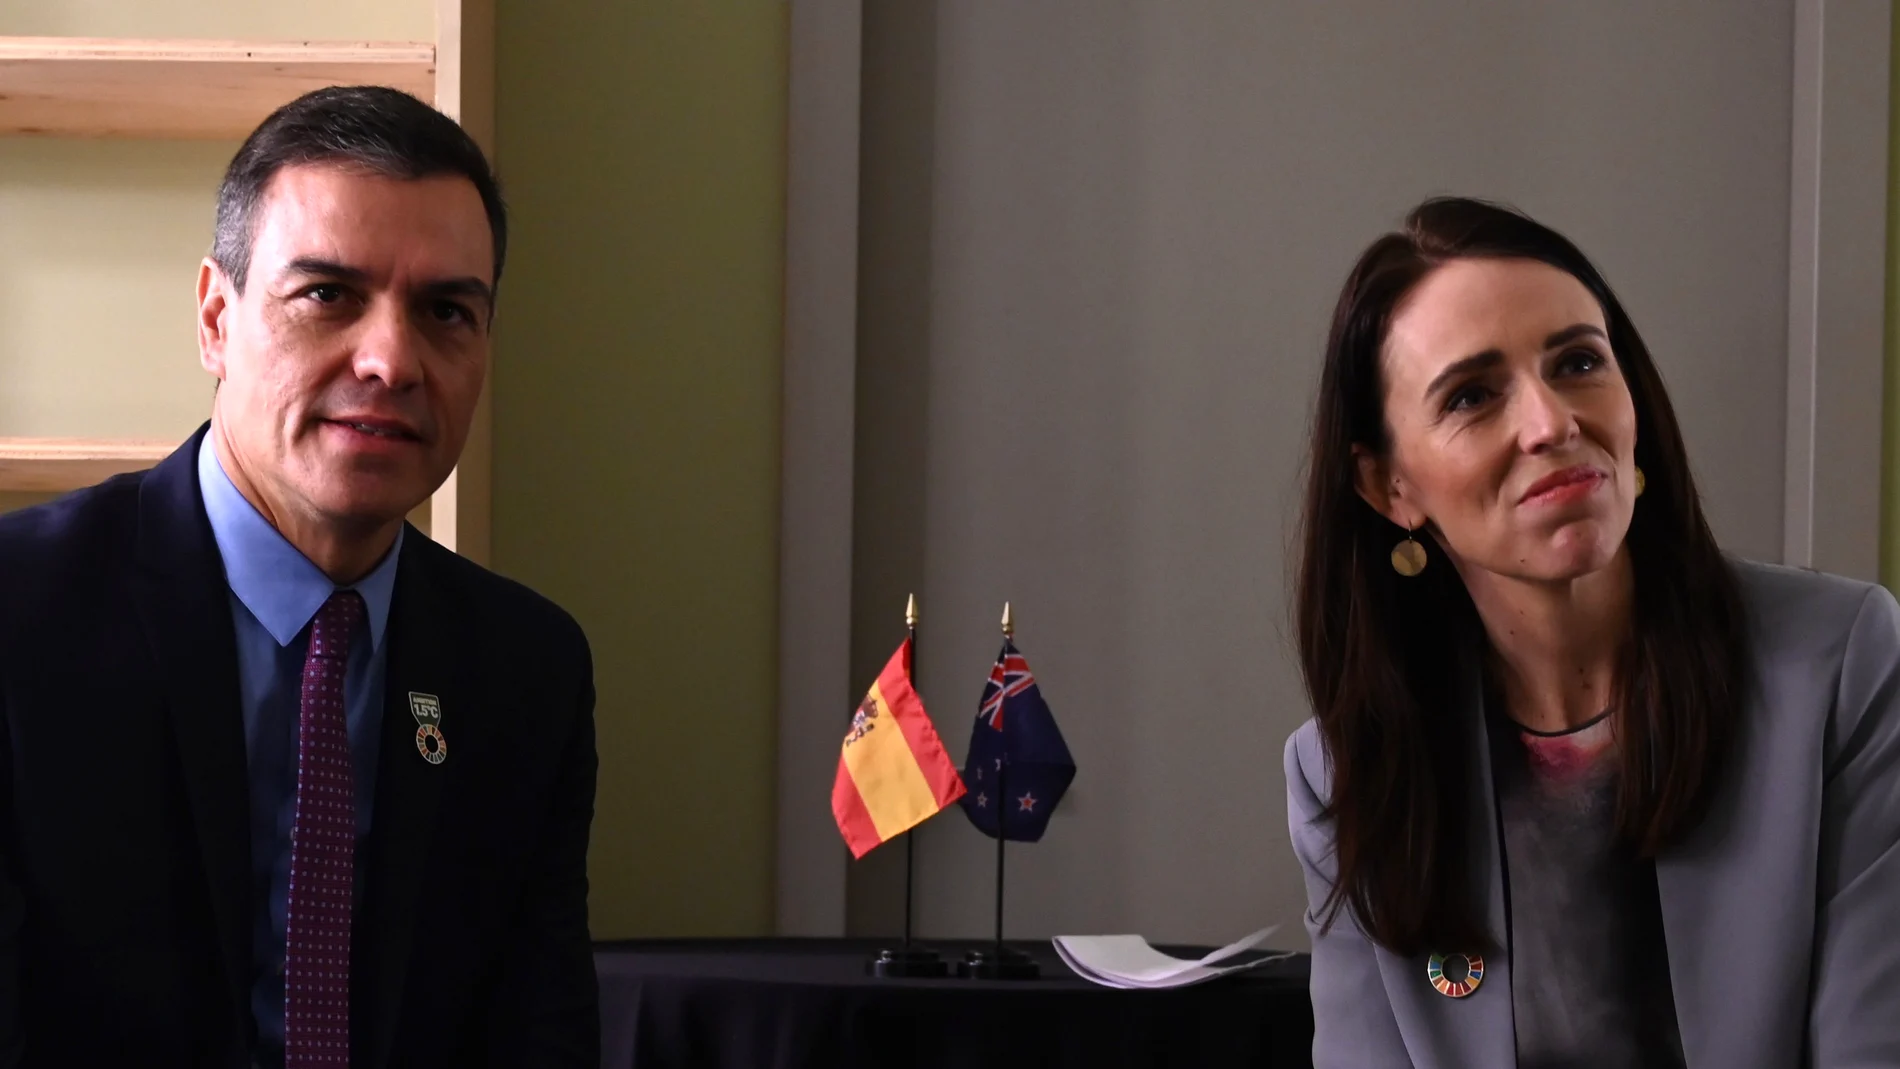 Jacinda Ardern, primera ministra de Nueva Zelanda, elige a "Peter Sánchez" como el líder mundial al que más respeta